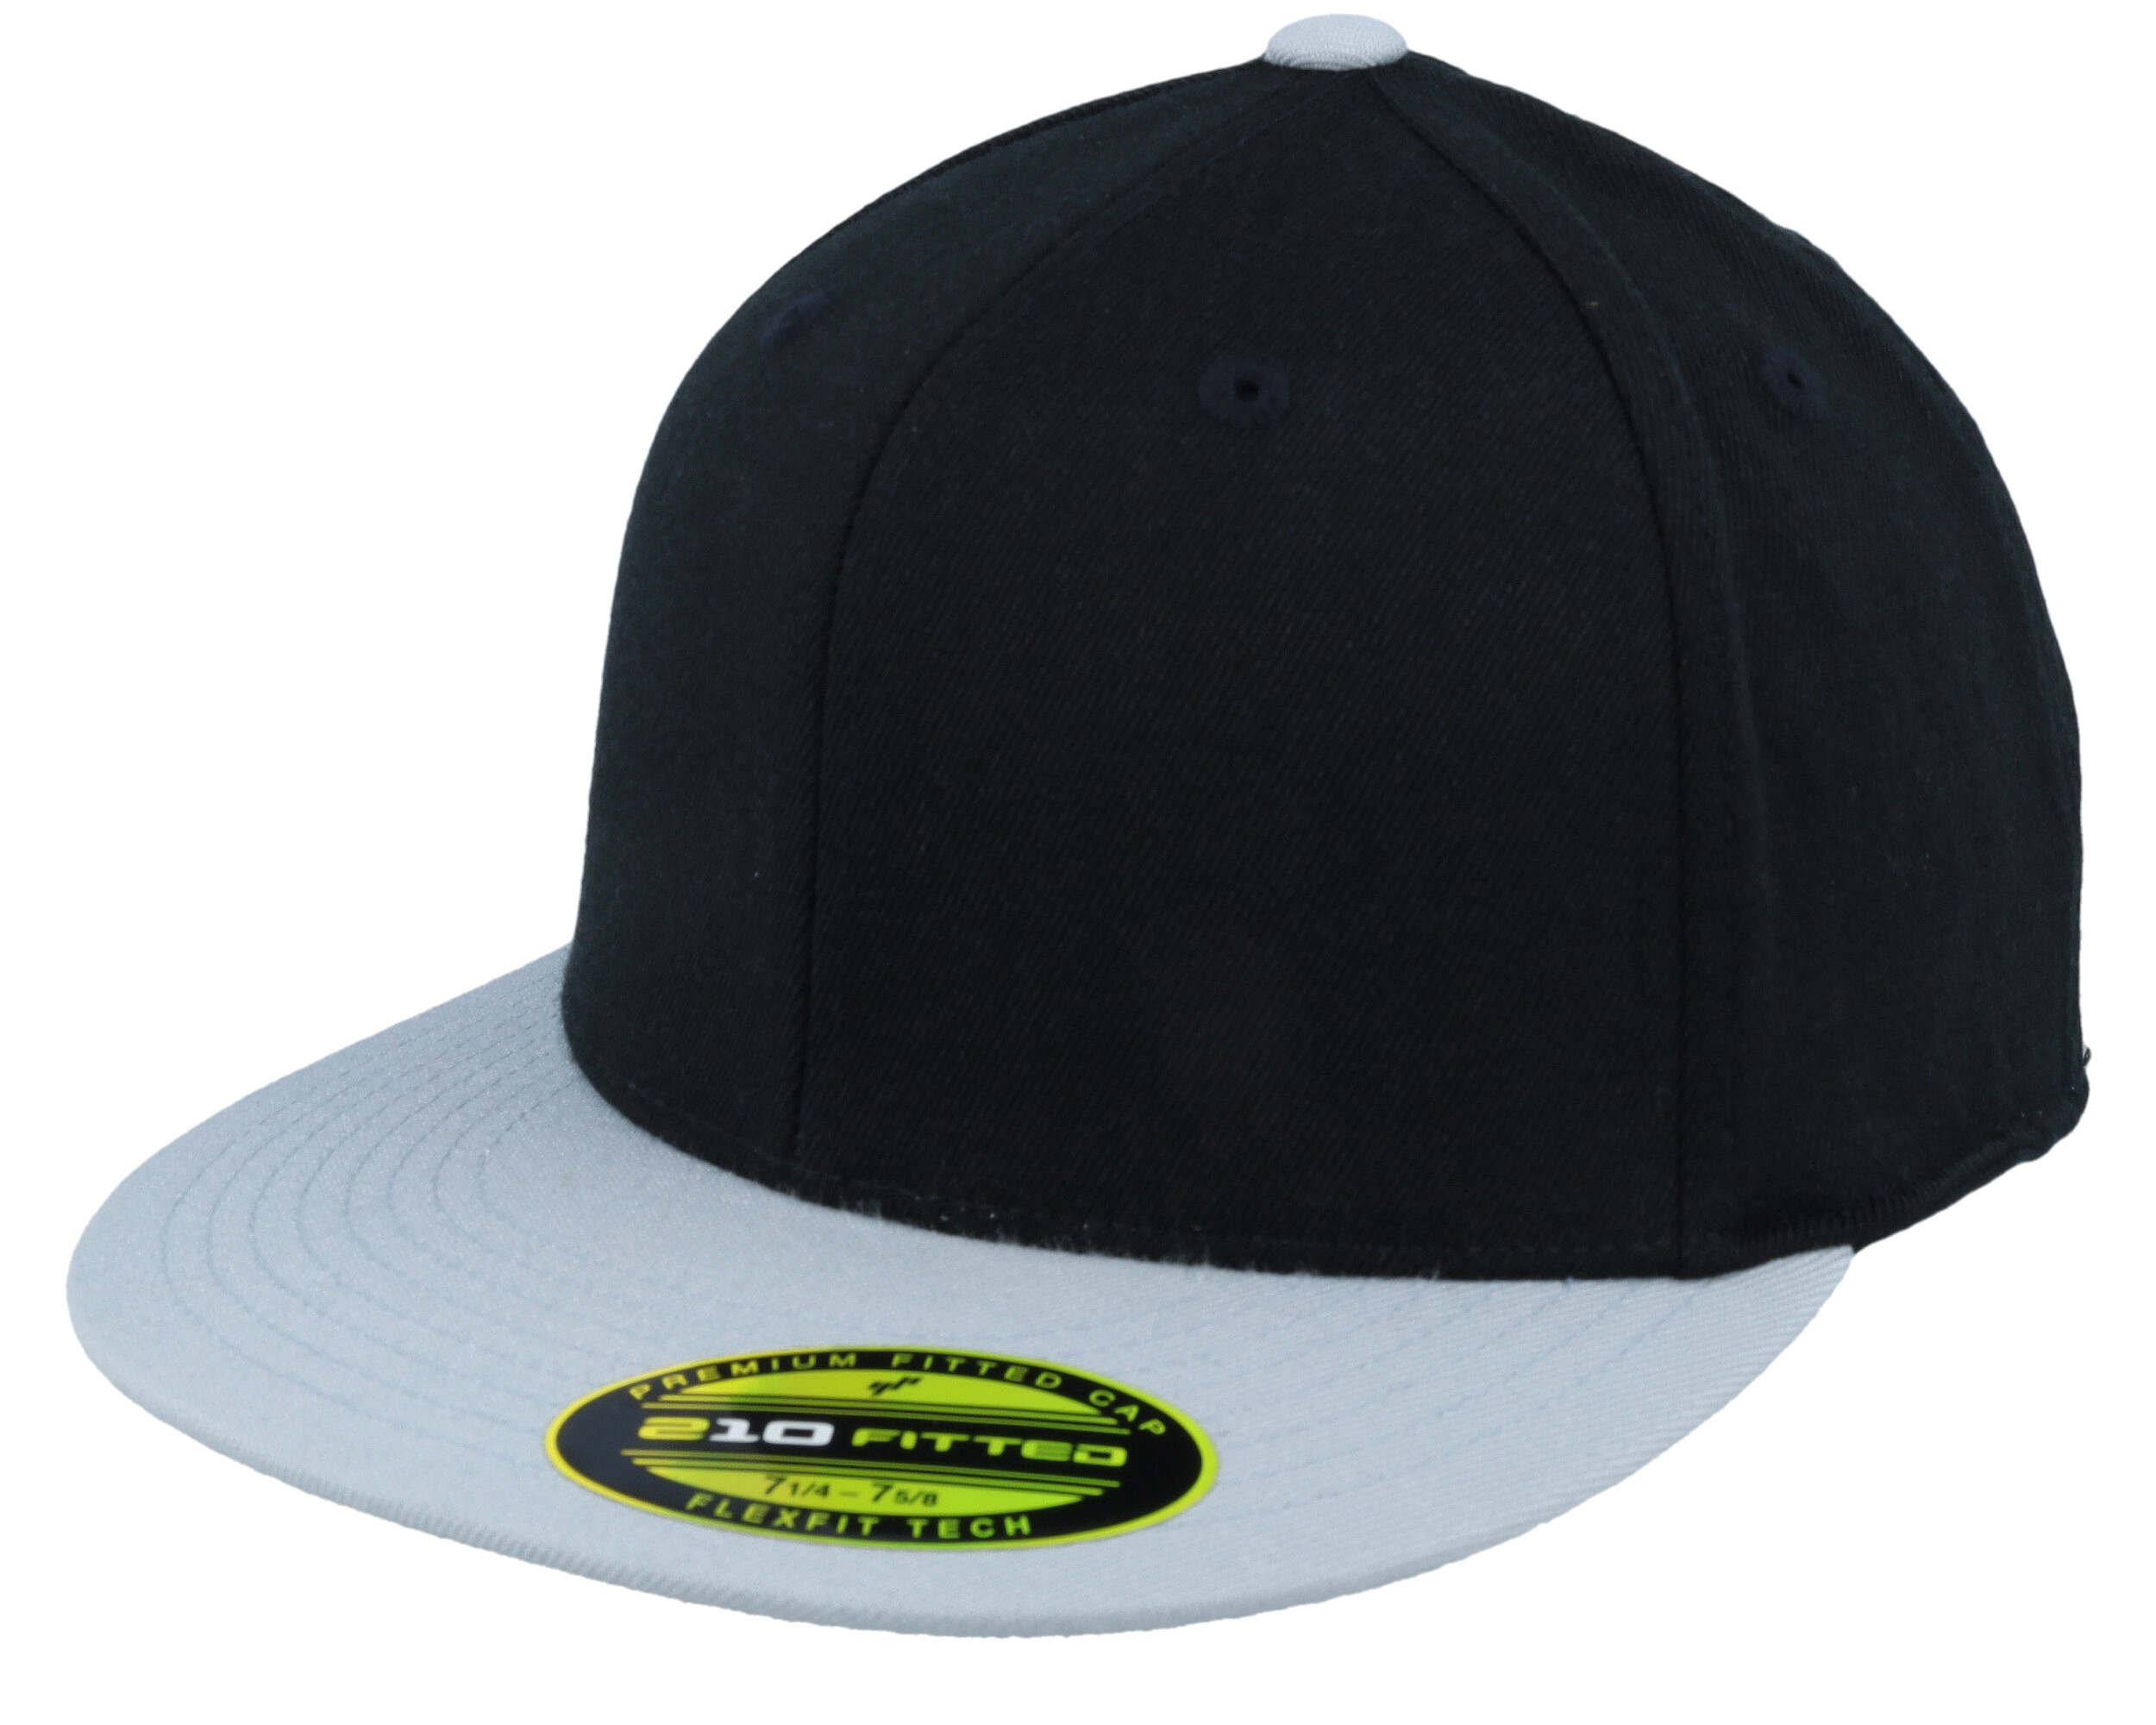 2-Tone cap Flexfit Fitted Black/Grey 210 Premium -